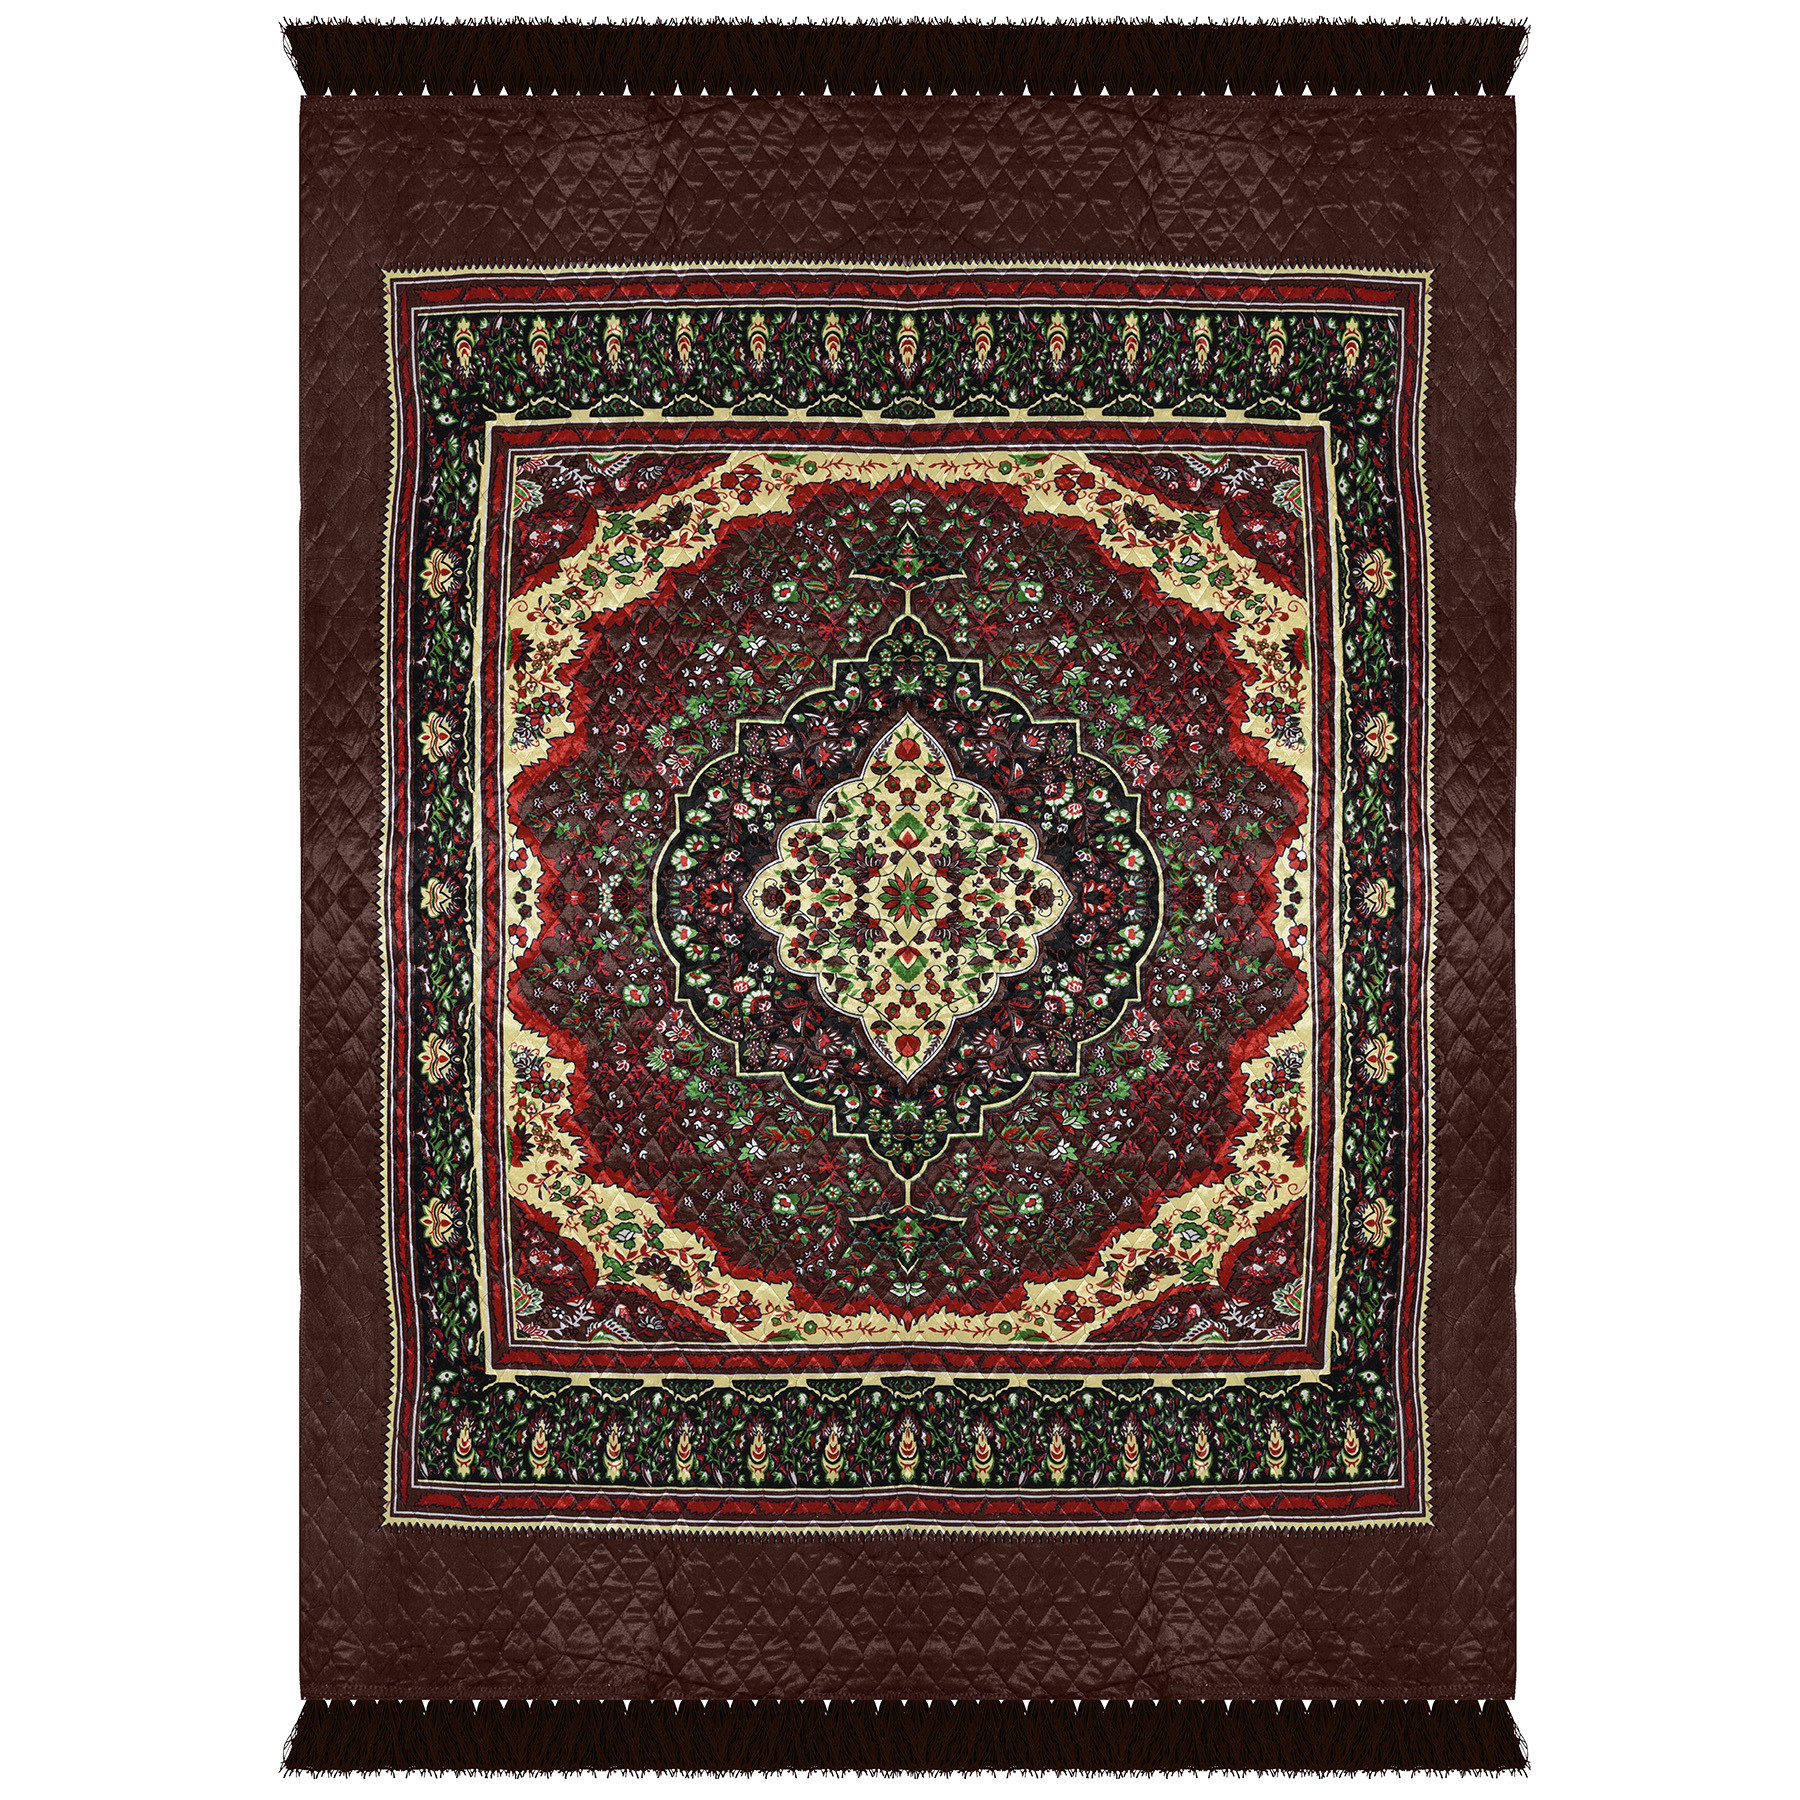 Kuber Industries Carpet | Velvet Carpet-Rug for Home Décor | Carpet Rug for Bedroom | Printed Carpet for Living Room | Prayer-Yoga Mat | Carpet for Hall | 6.5x7.5 Ft | Brown